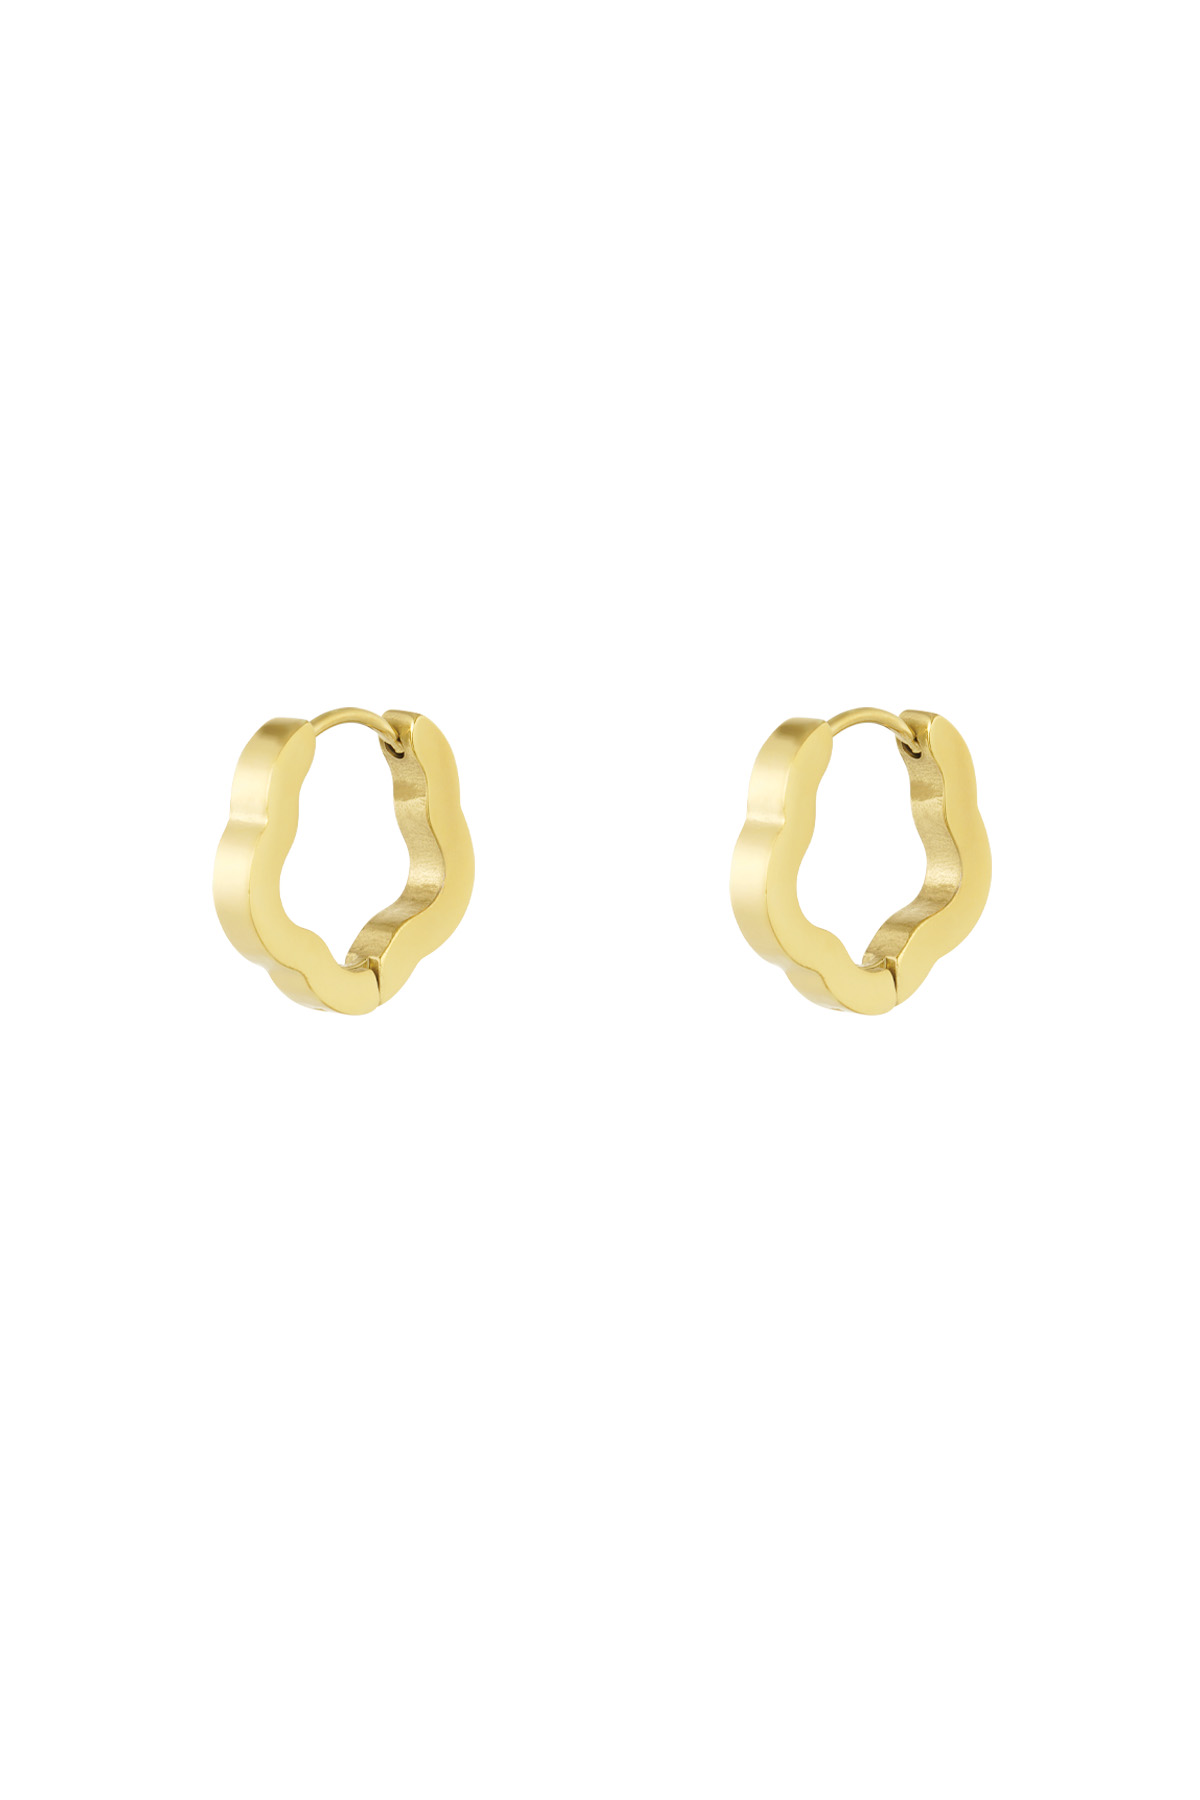 Einfache Ohrringe in Blumenform, klein – Gold 